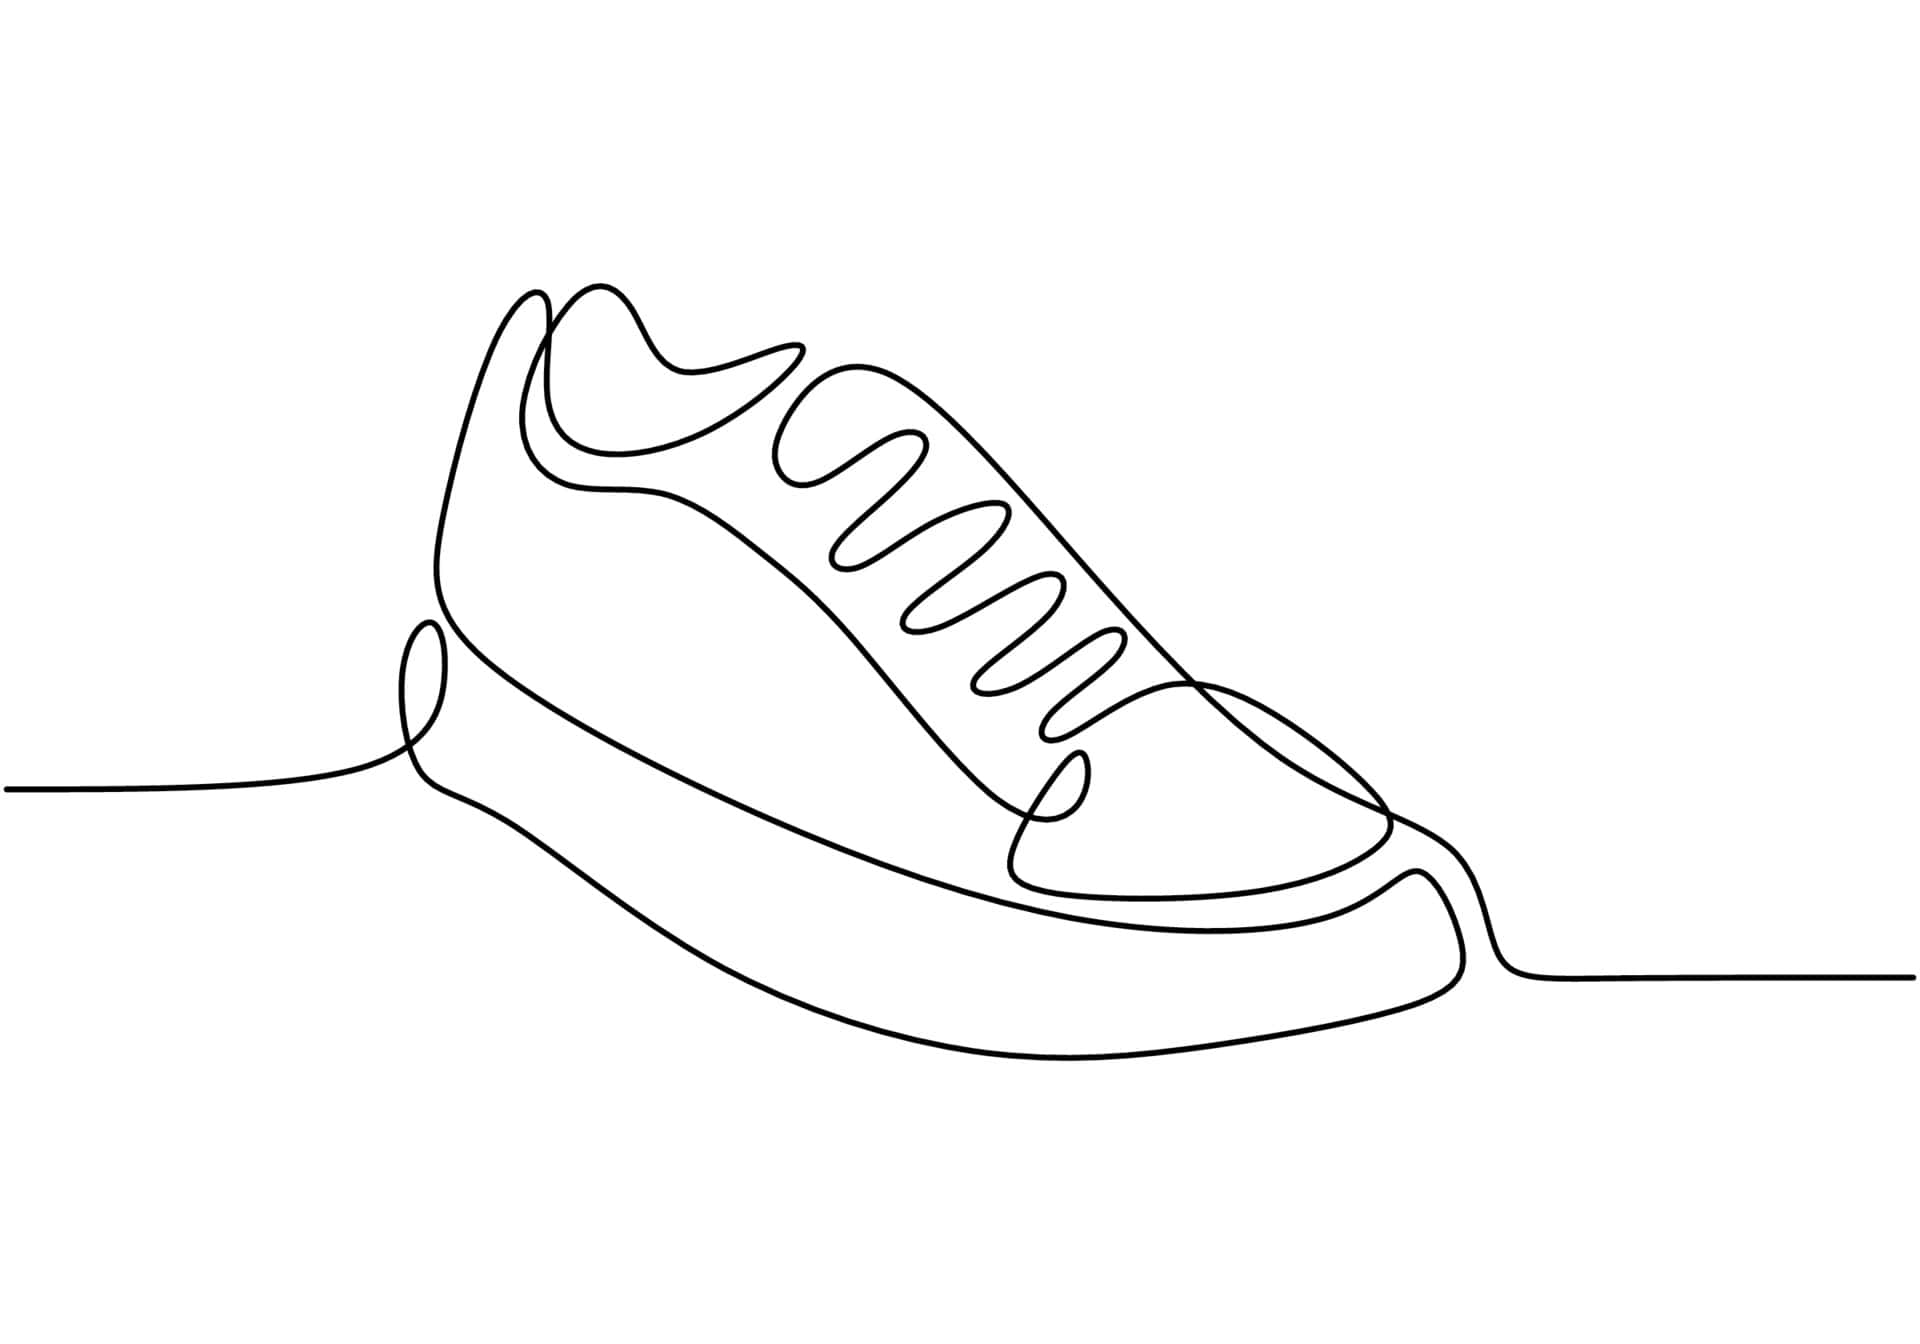 Einekontinuierliche Linienzeichnung Eines Schuhs